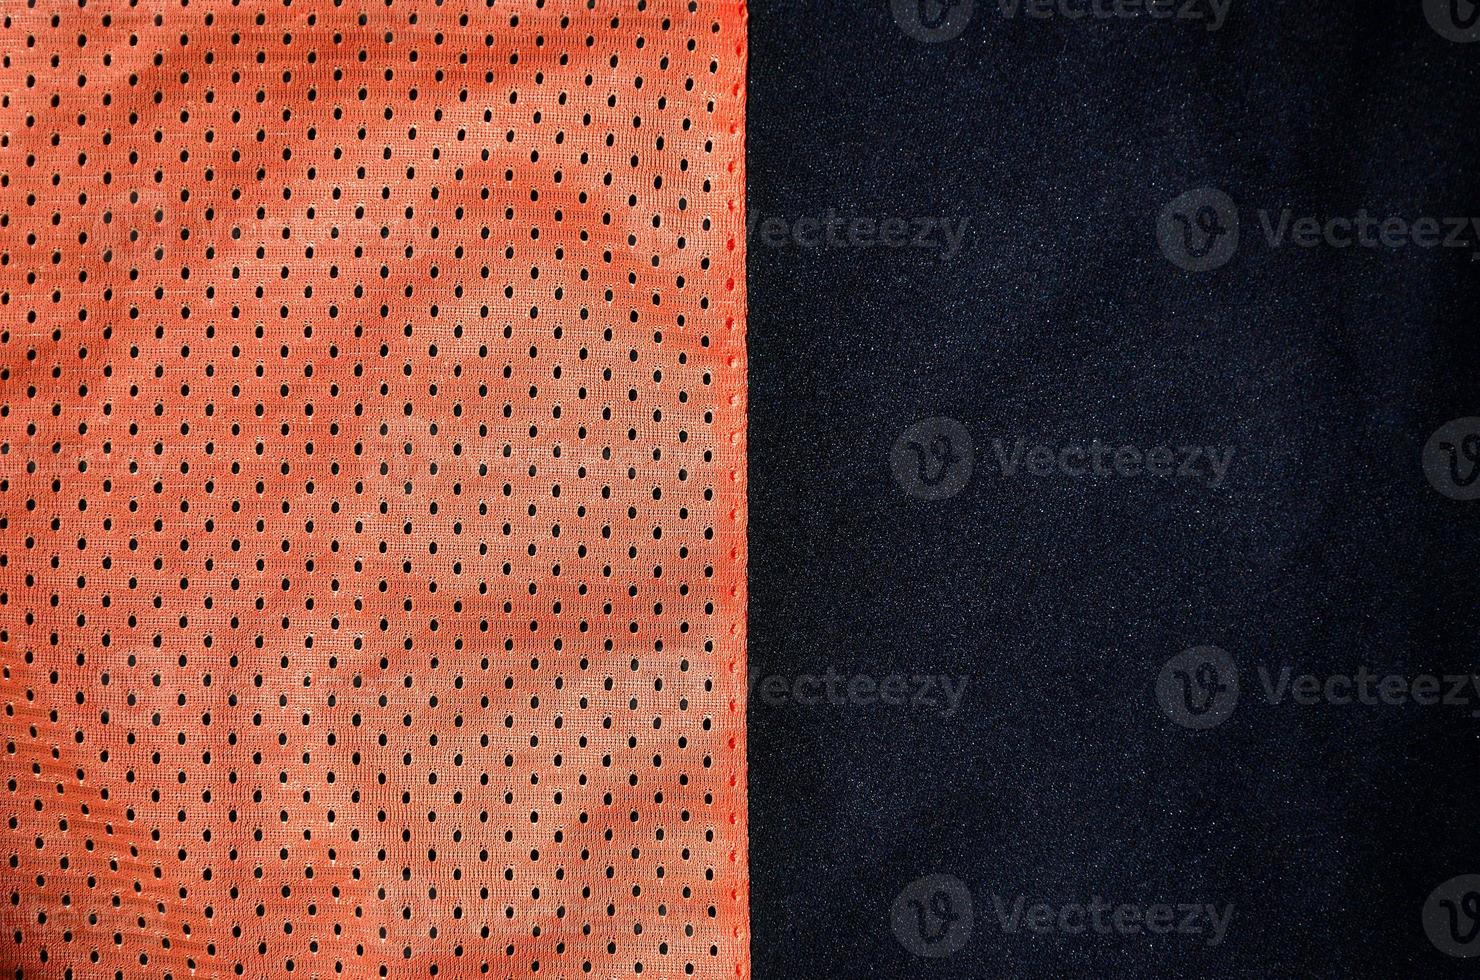 fundo de textura de tecido de roupas esportivas. vista superior da superfície têxtil de pano de nylon de poliéster vermelho. camisa de basquete colorida com espaço livre para texto foto